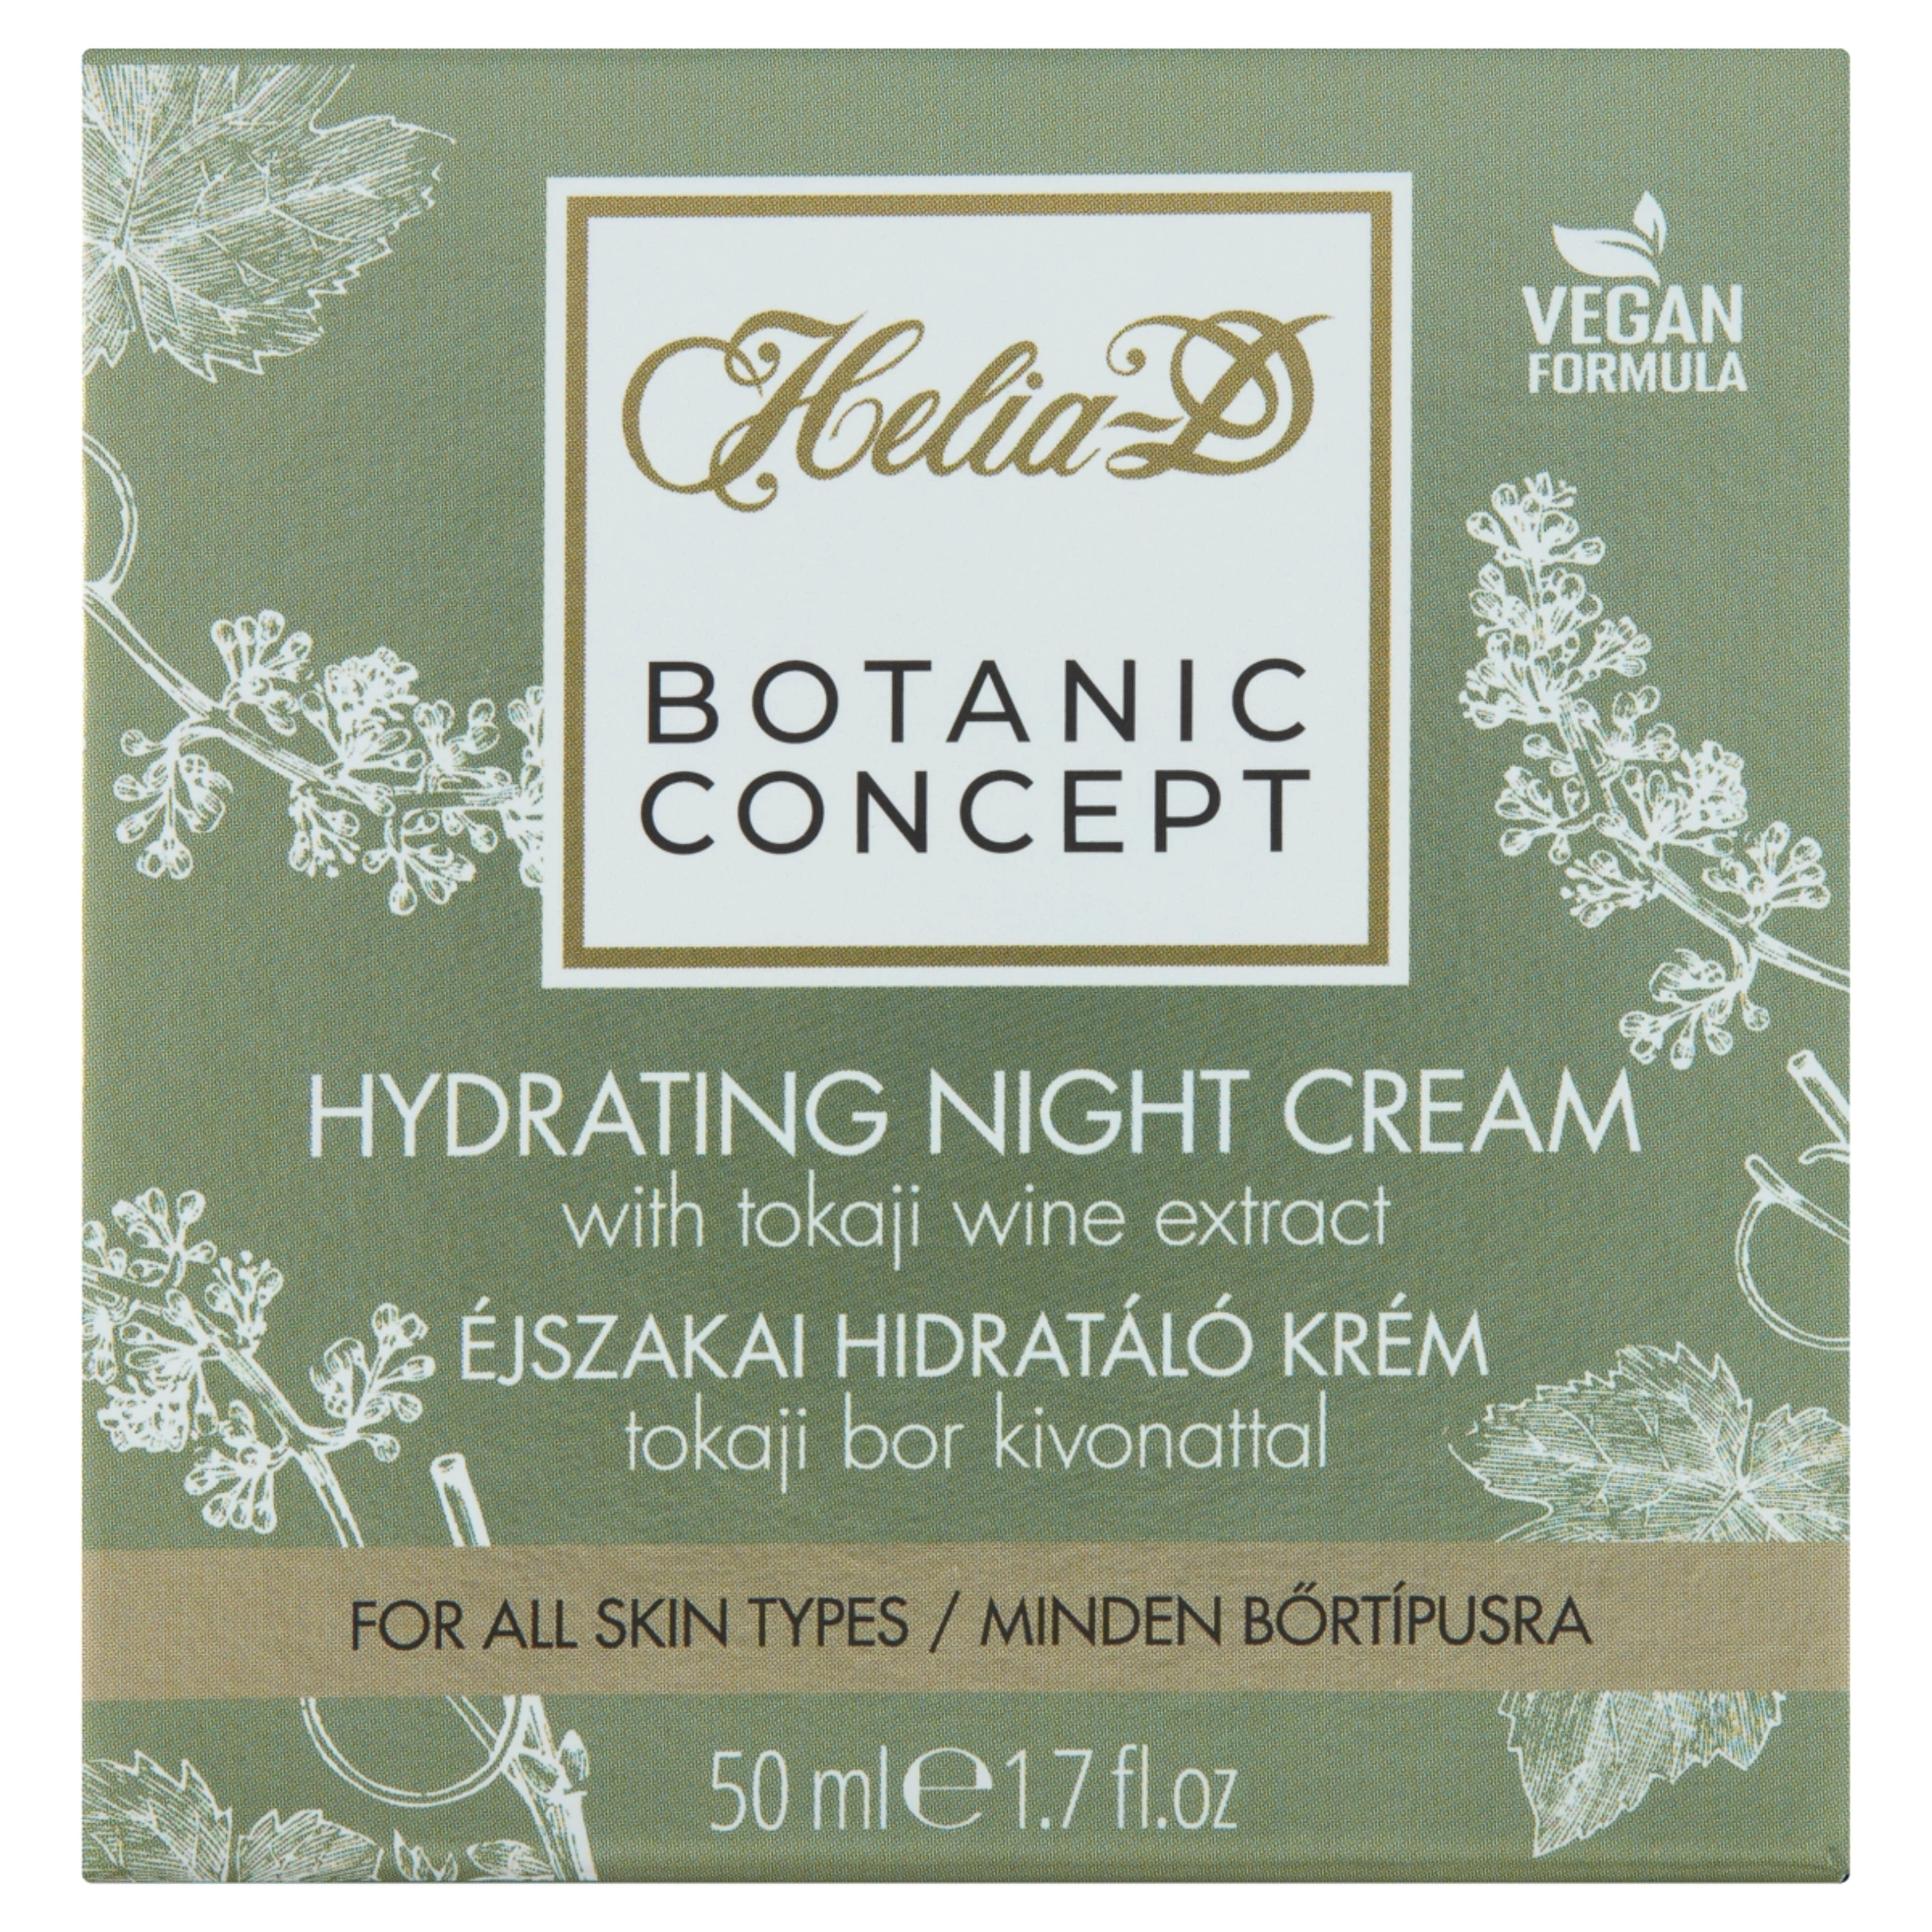 Helia-D Botanic Concept Tokaji Aszús Hidratáló éjszakai arckrém - 50 ml-1